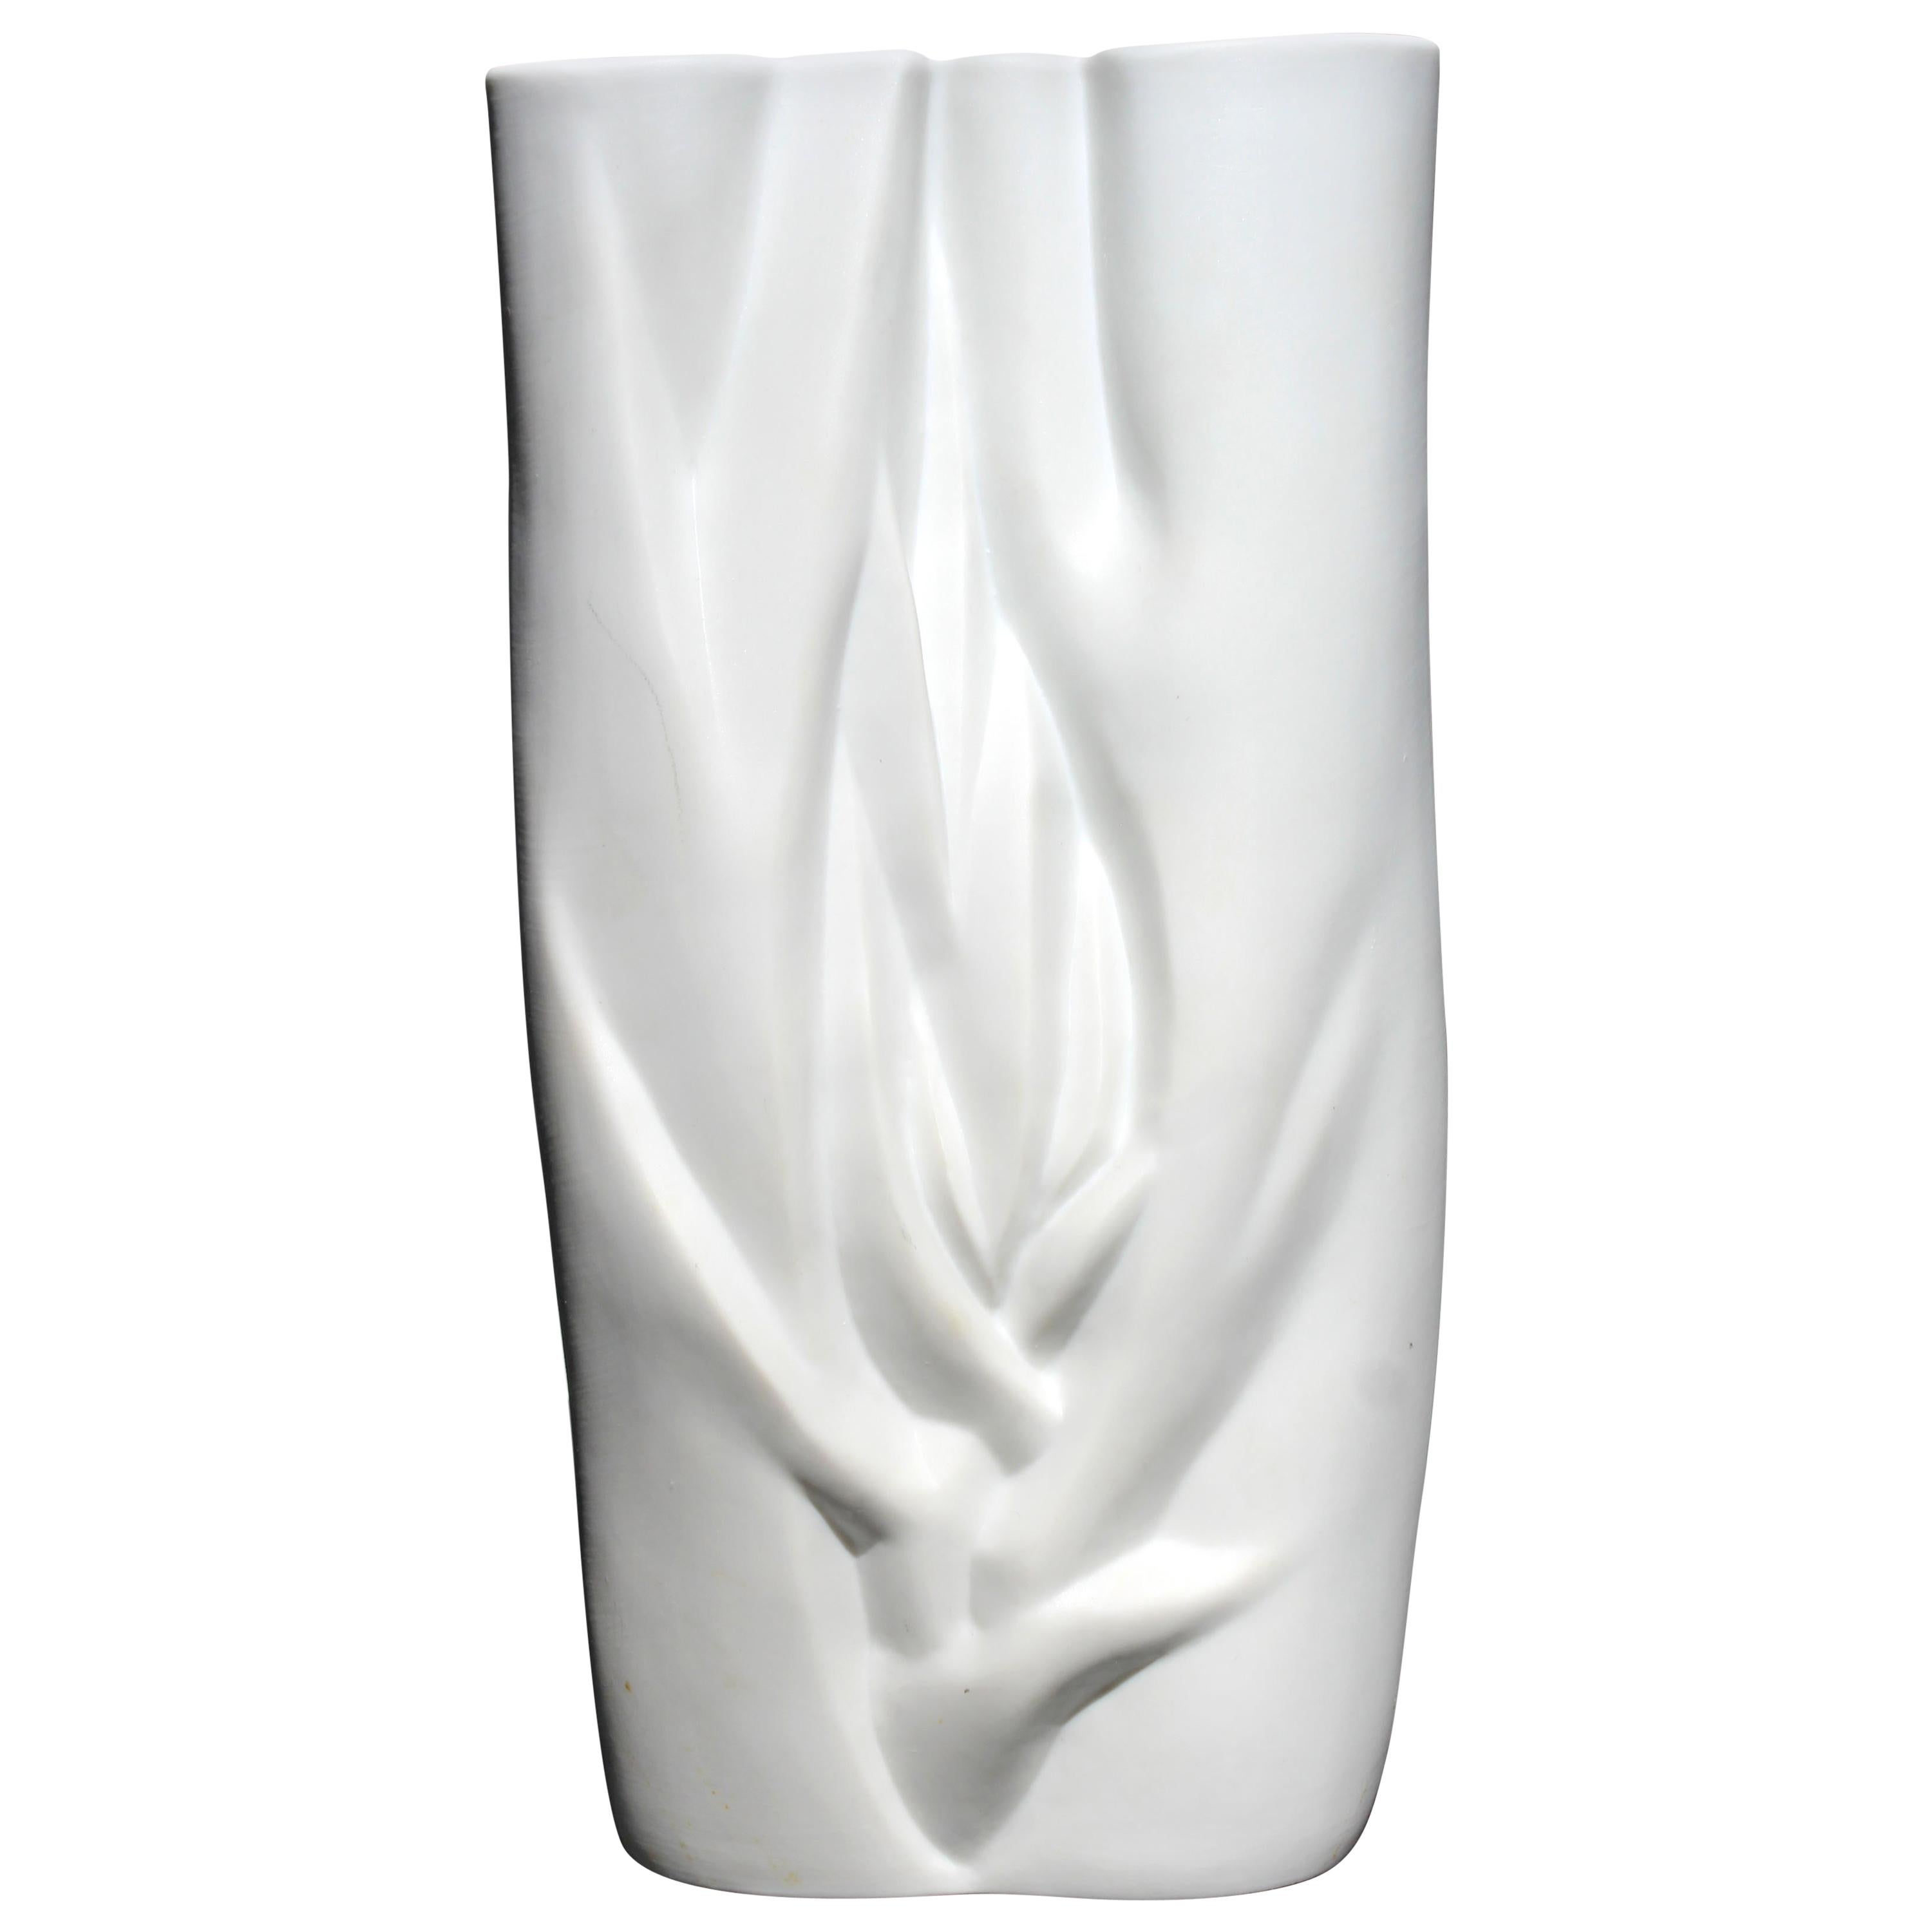 Modernist White Porcelain Meissen Vase Stamped